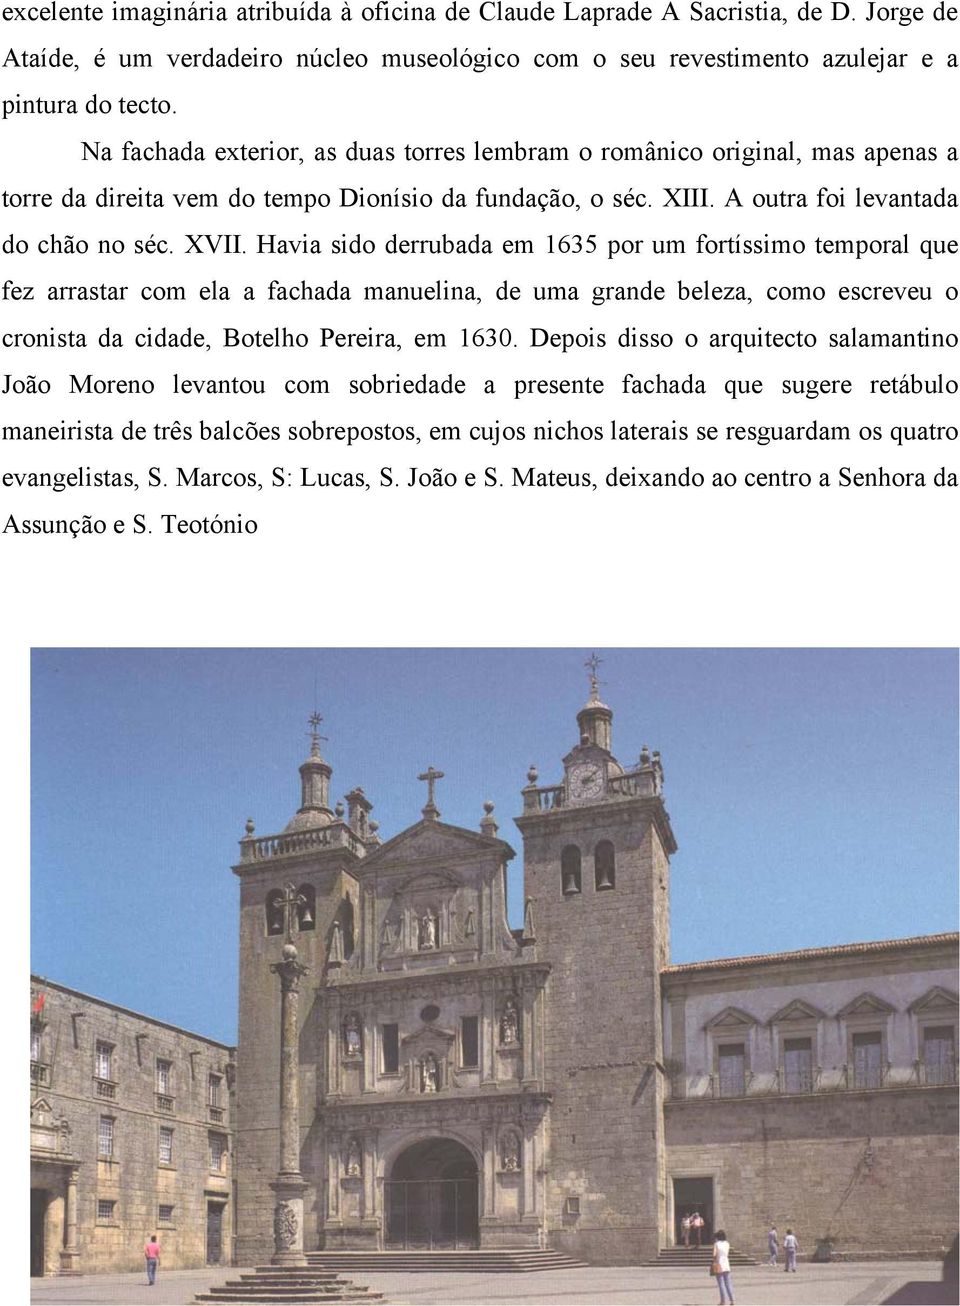 Havia sido derrubada em 1635 por um fortíssimo temporal que fez arrastar com ela a fachada manuelina, de uma grande beleza, como escreveu o cronista da cidade, Botelho Pereira, em 1630.